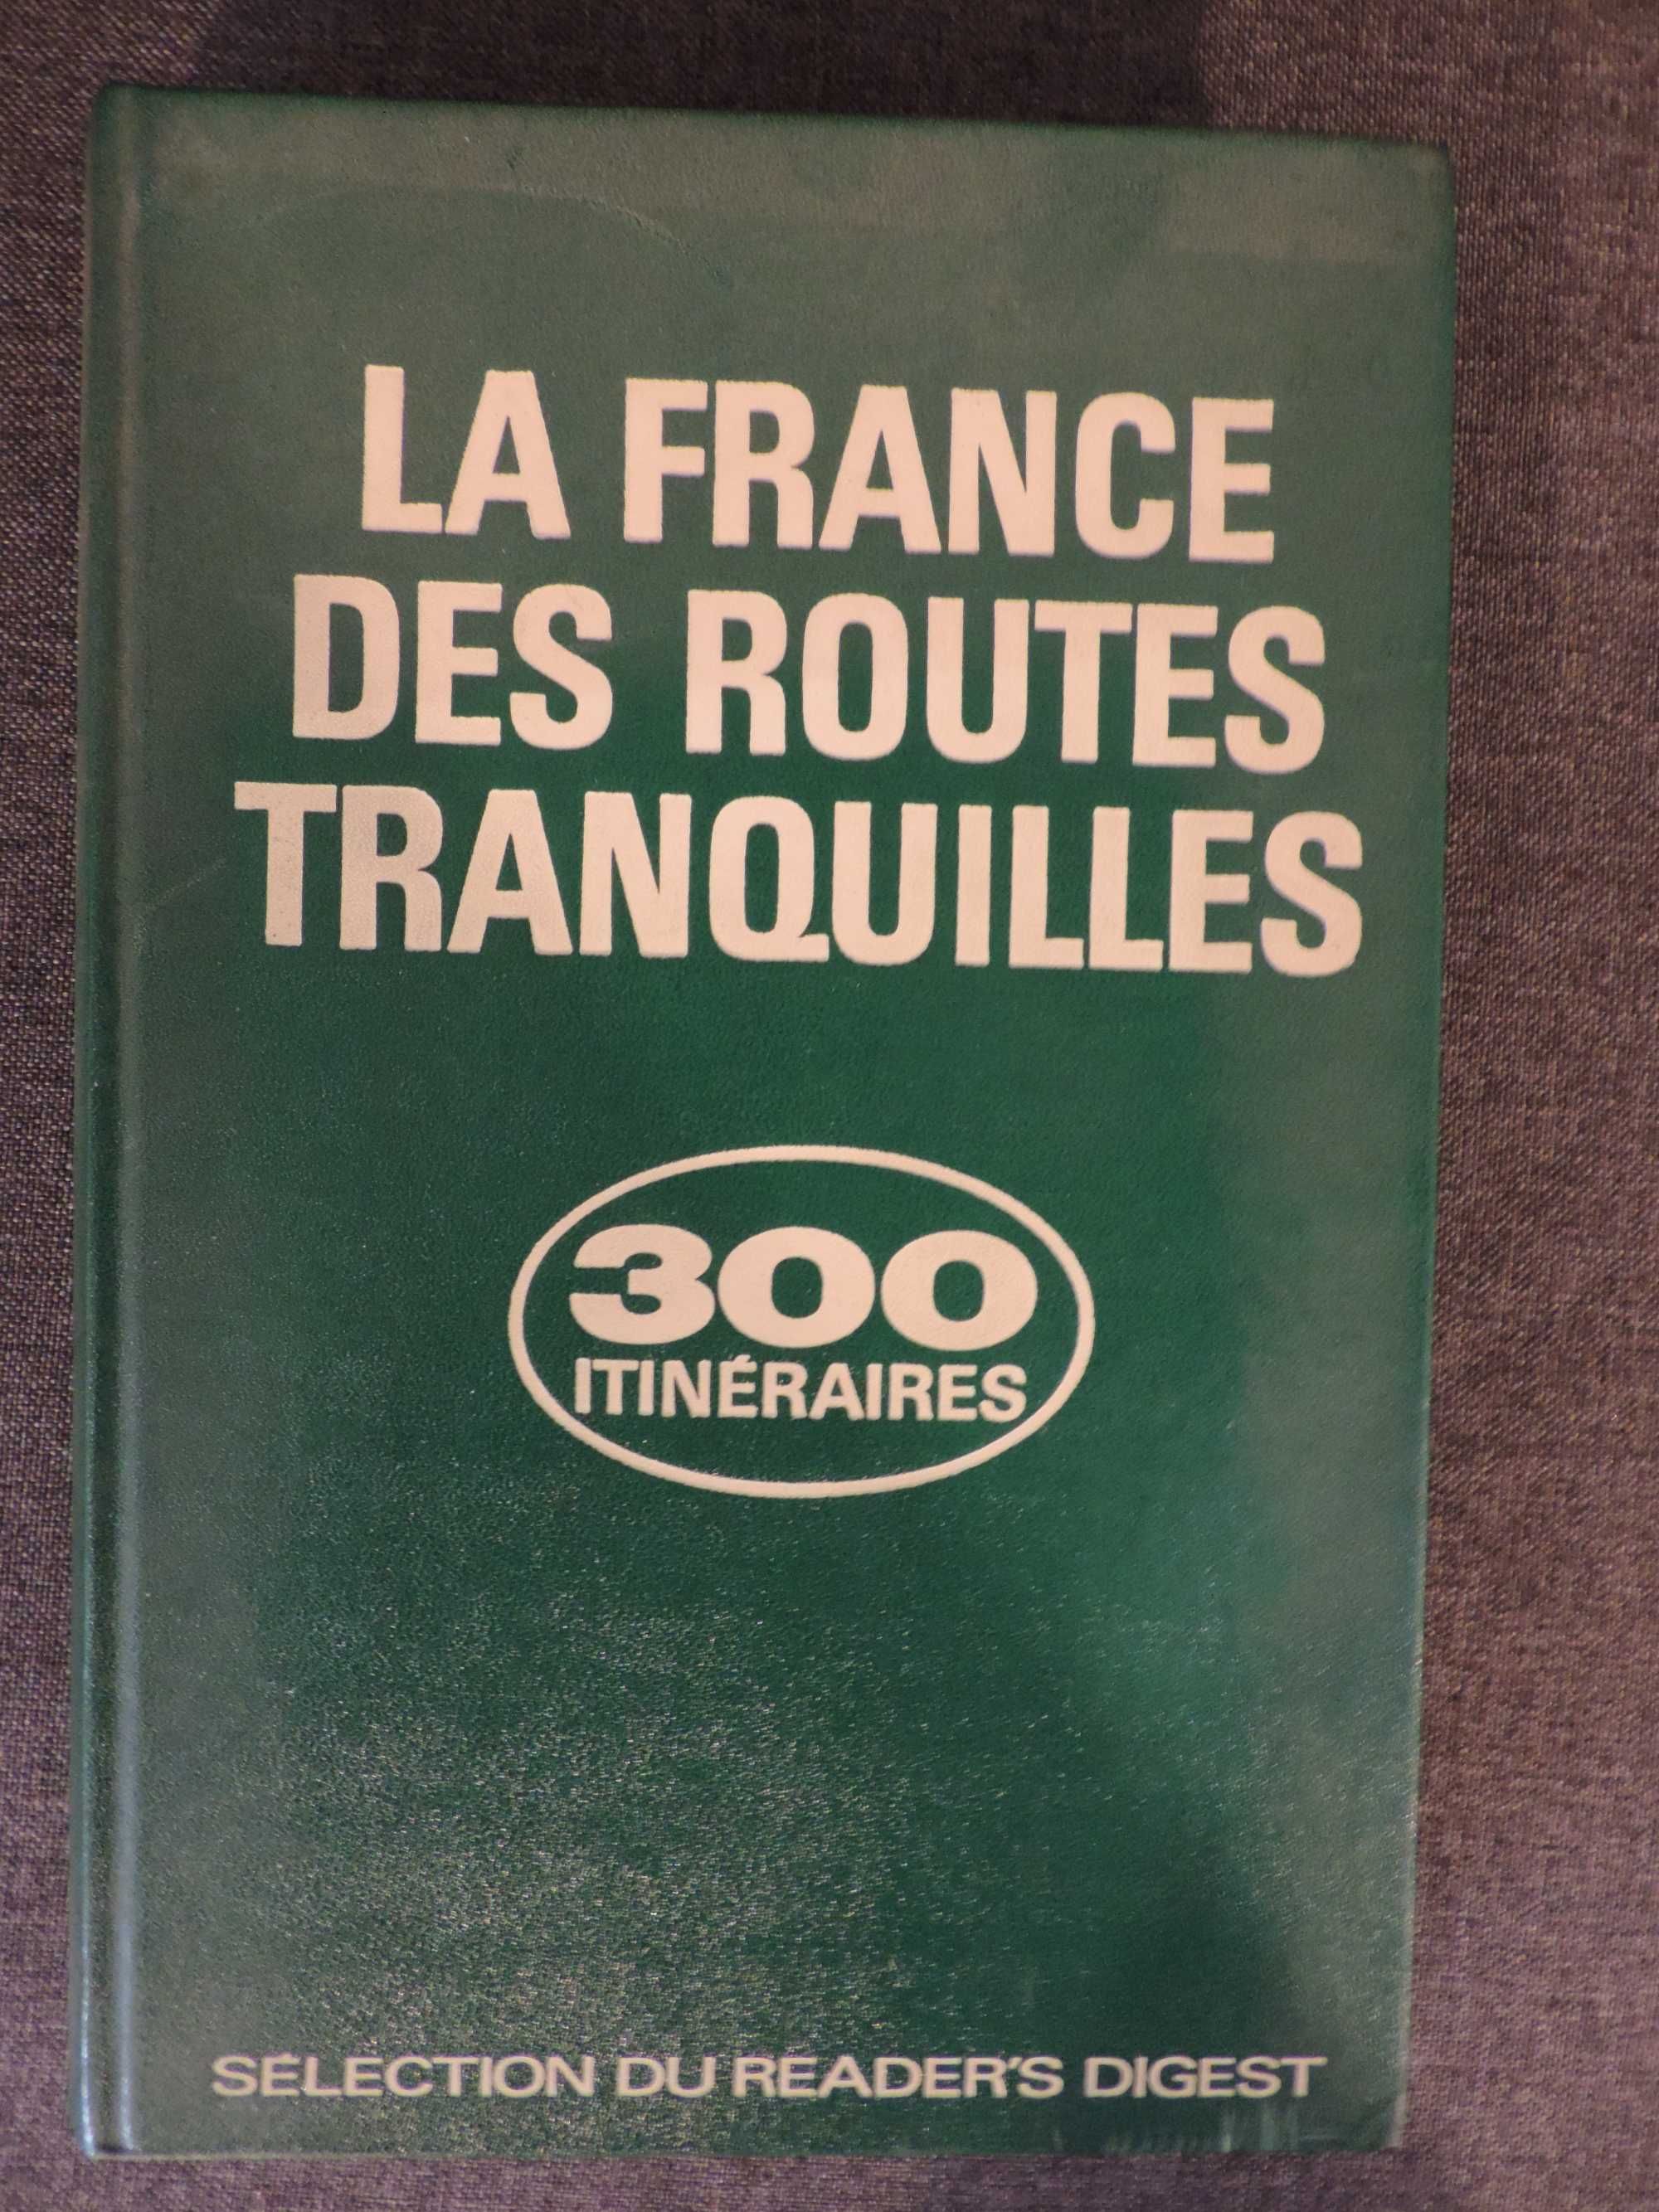 La France des Routes Tranquilles - 300 itineraires